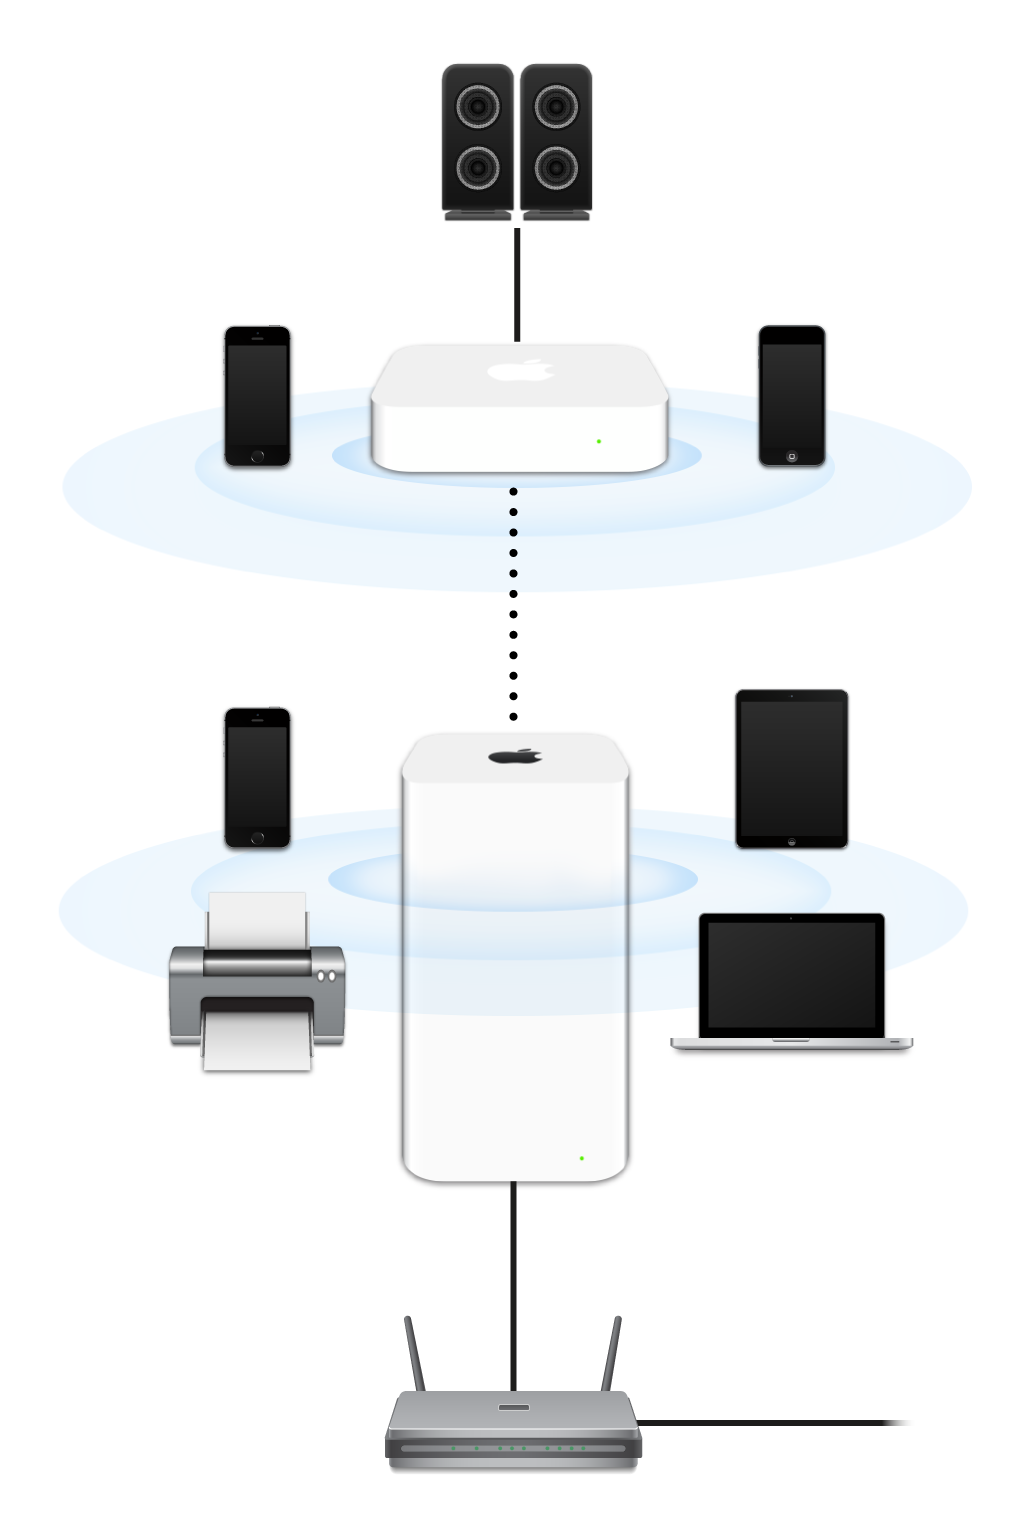 Una red ampliada, que incluye una AirPort Extreme y una AirPort Express conectadas a un módem y transmitiendo a diferentes dispositivos.